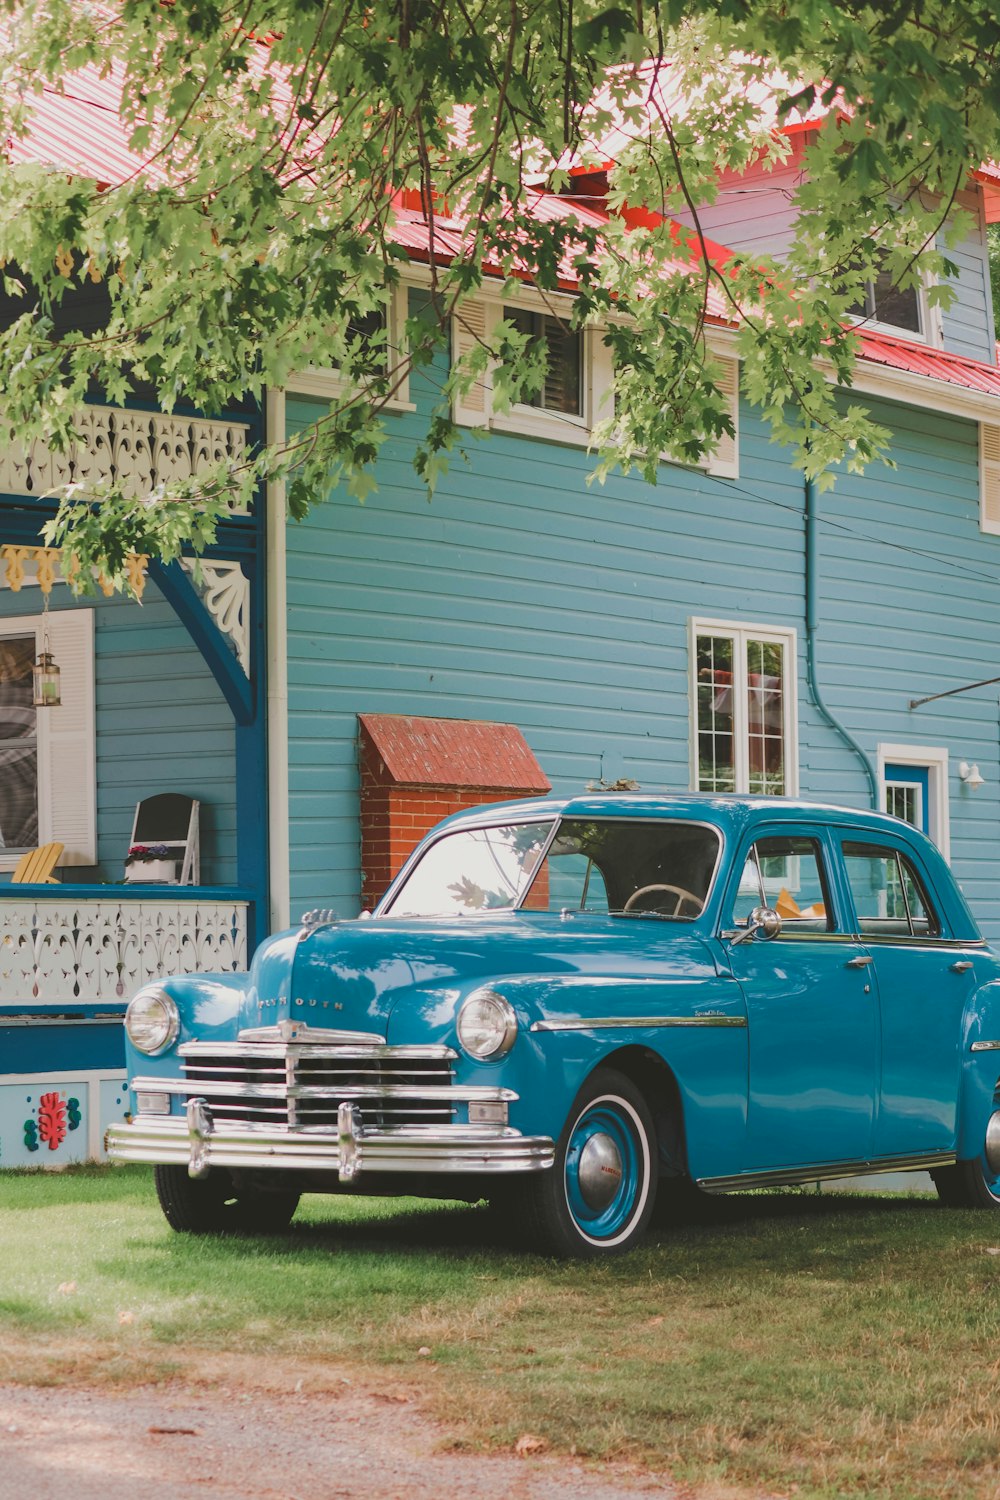 Une vieille voiture bleue garée devant une maison